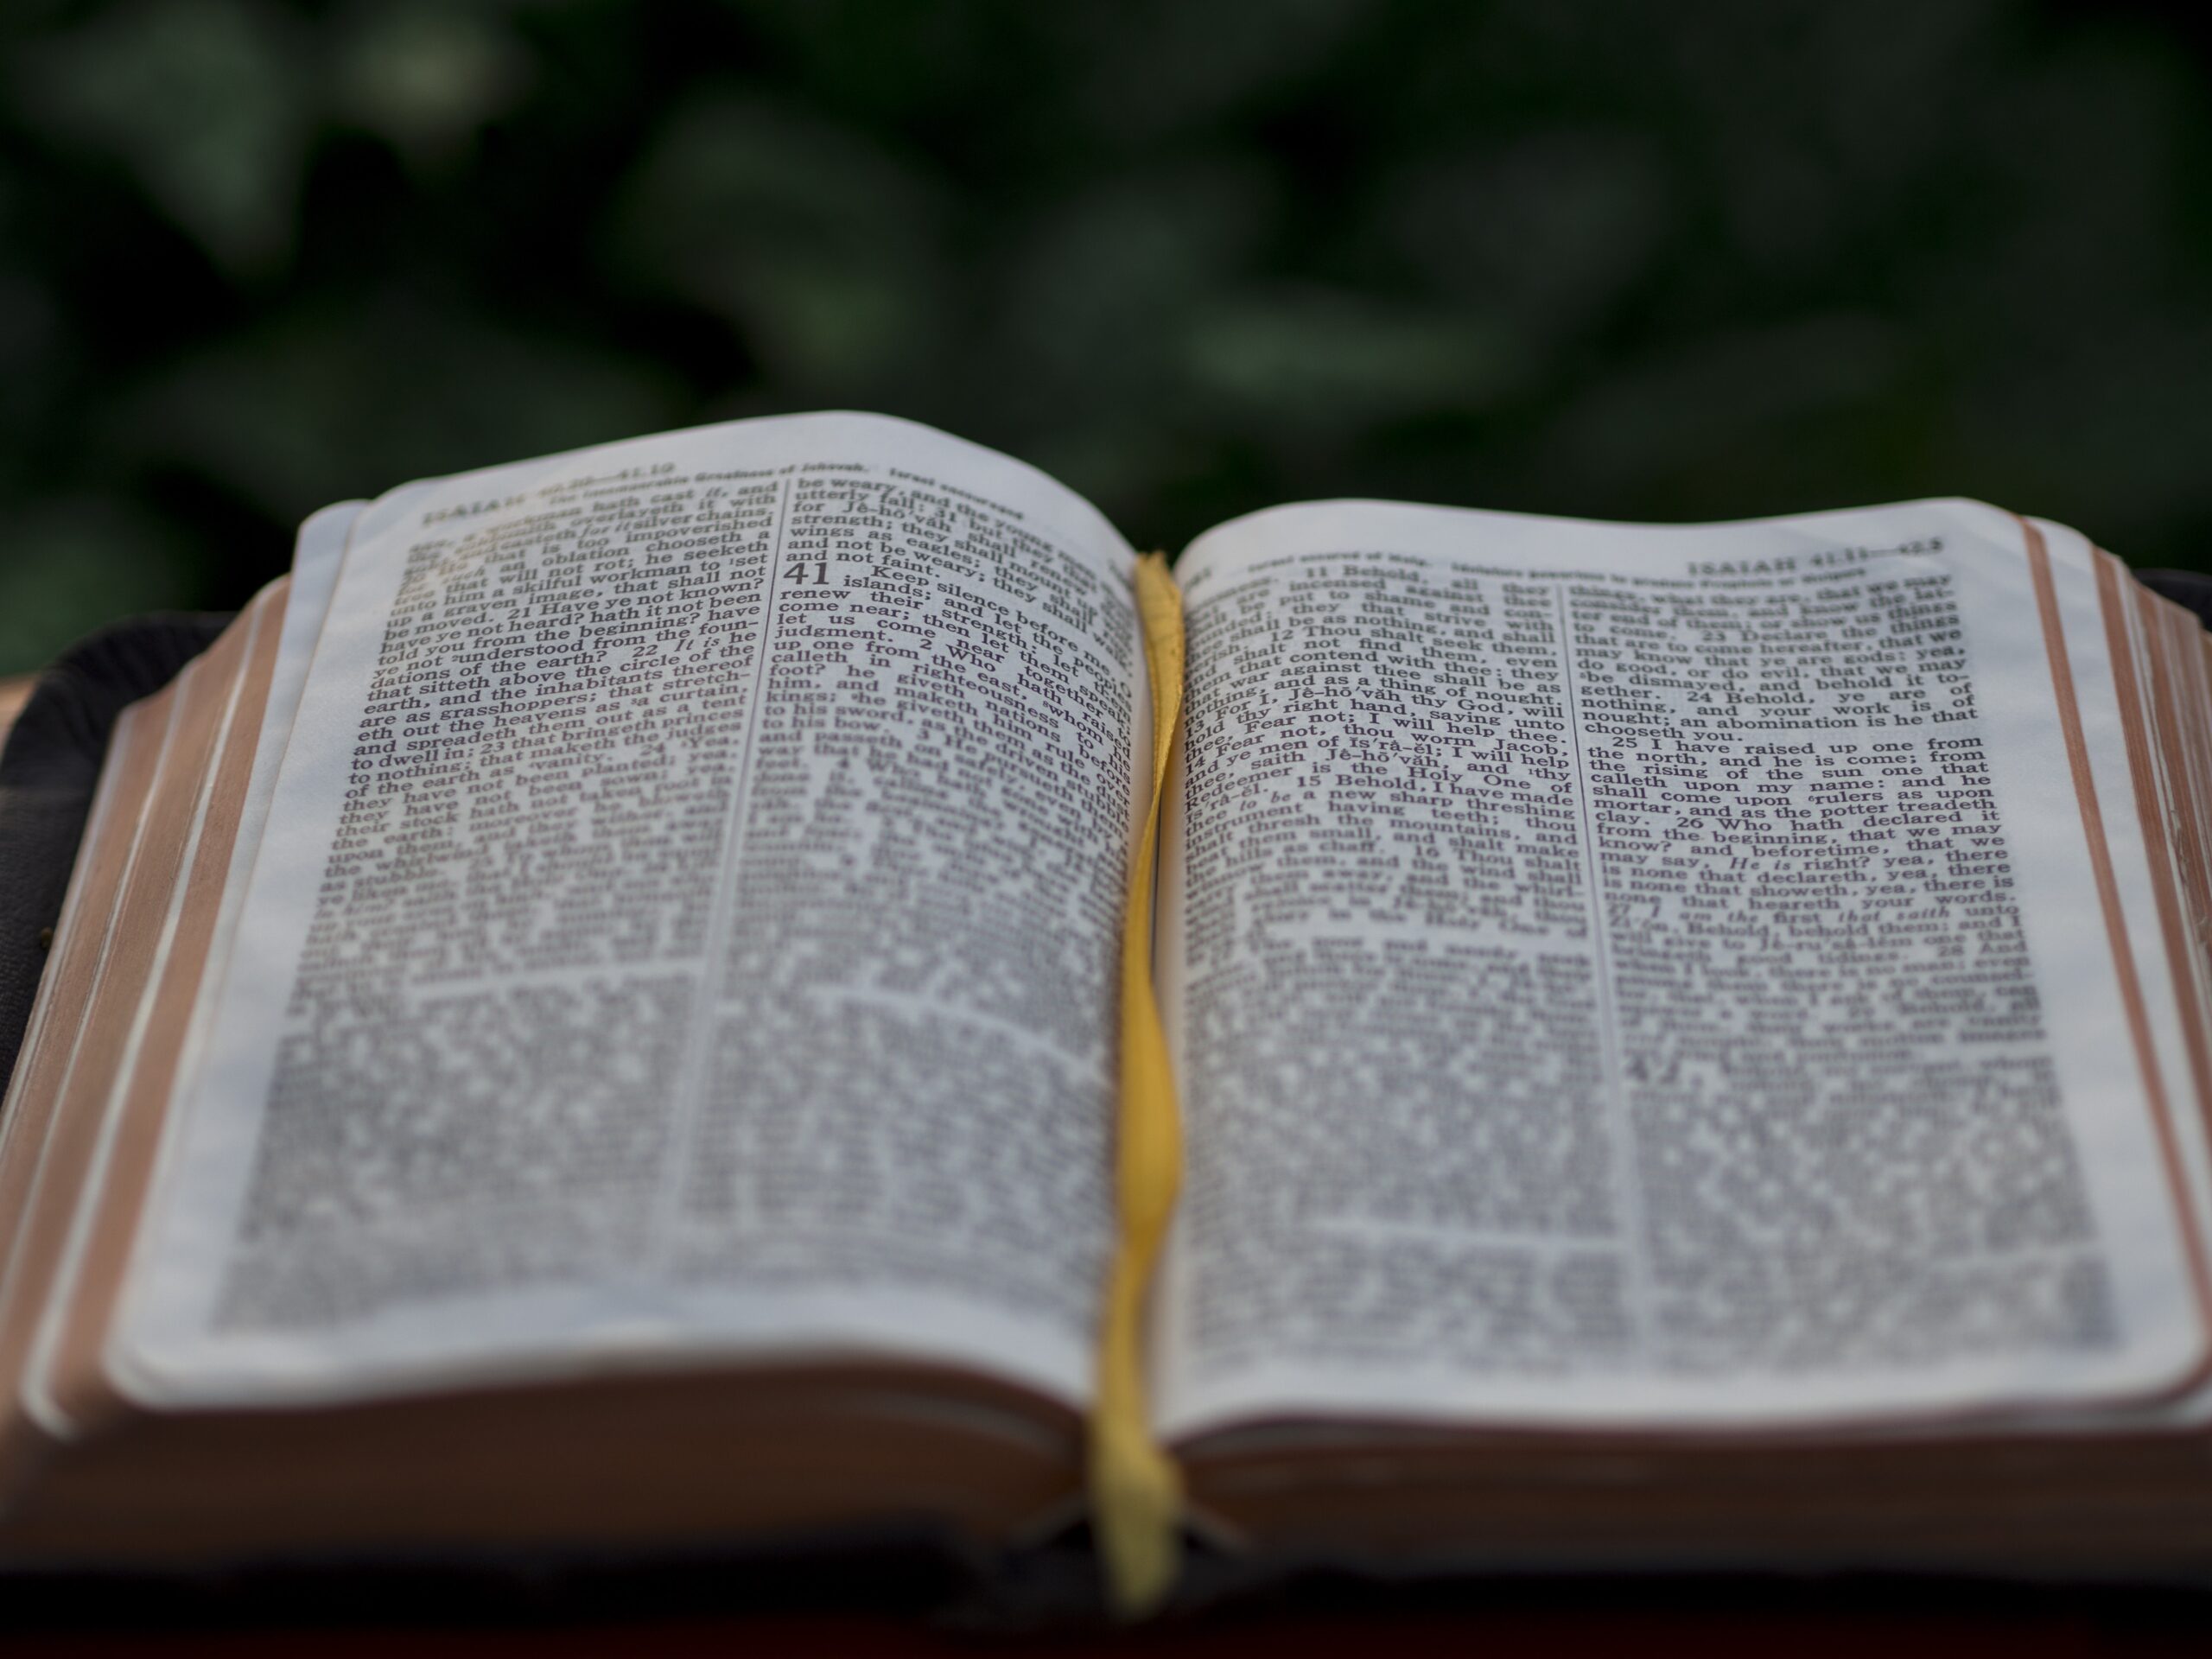 Nurturing Spiritual Growth through the Bible